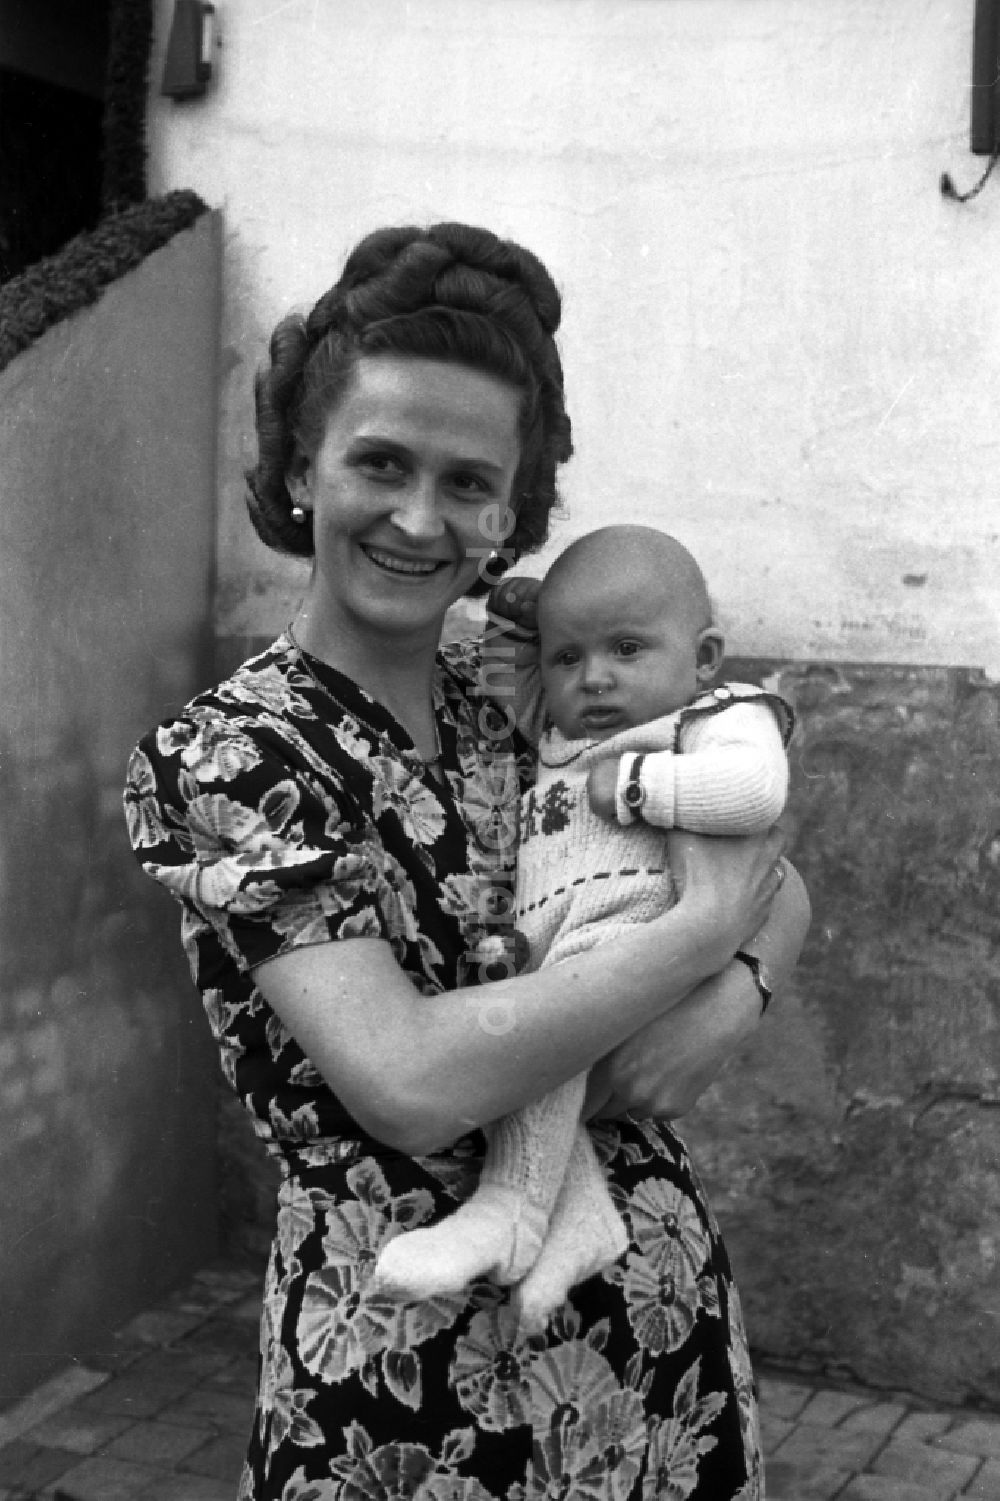 DDR-Bildarchiv: Merseburg - Frau mit Baby auf dem Arm in Merseburg in Sachsen-Anhalt in der DDR